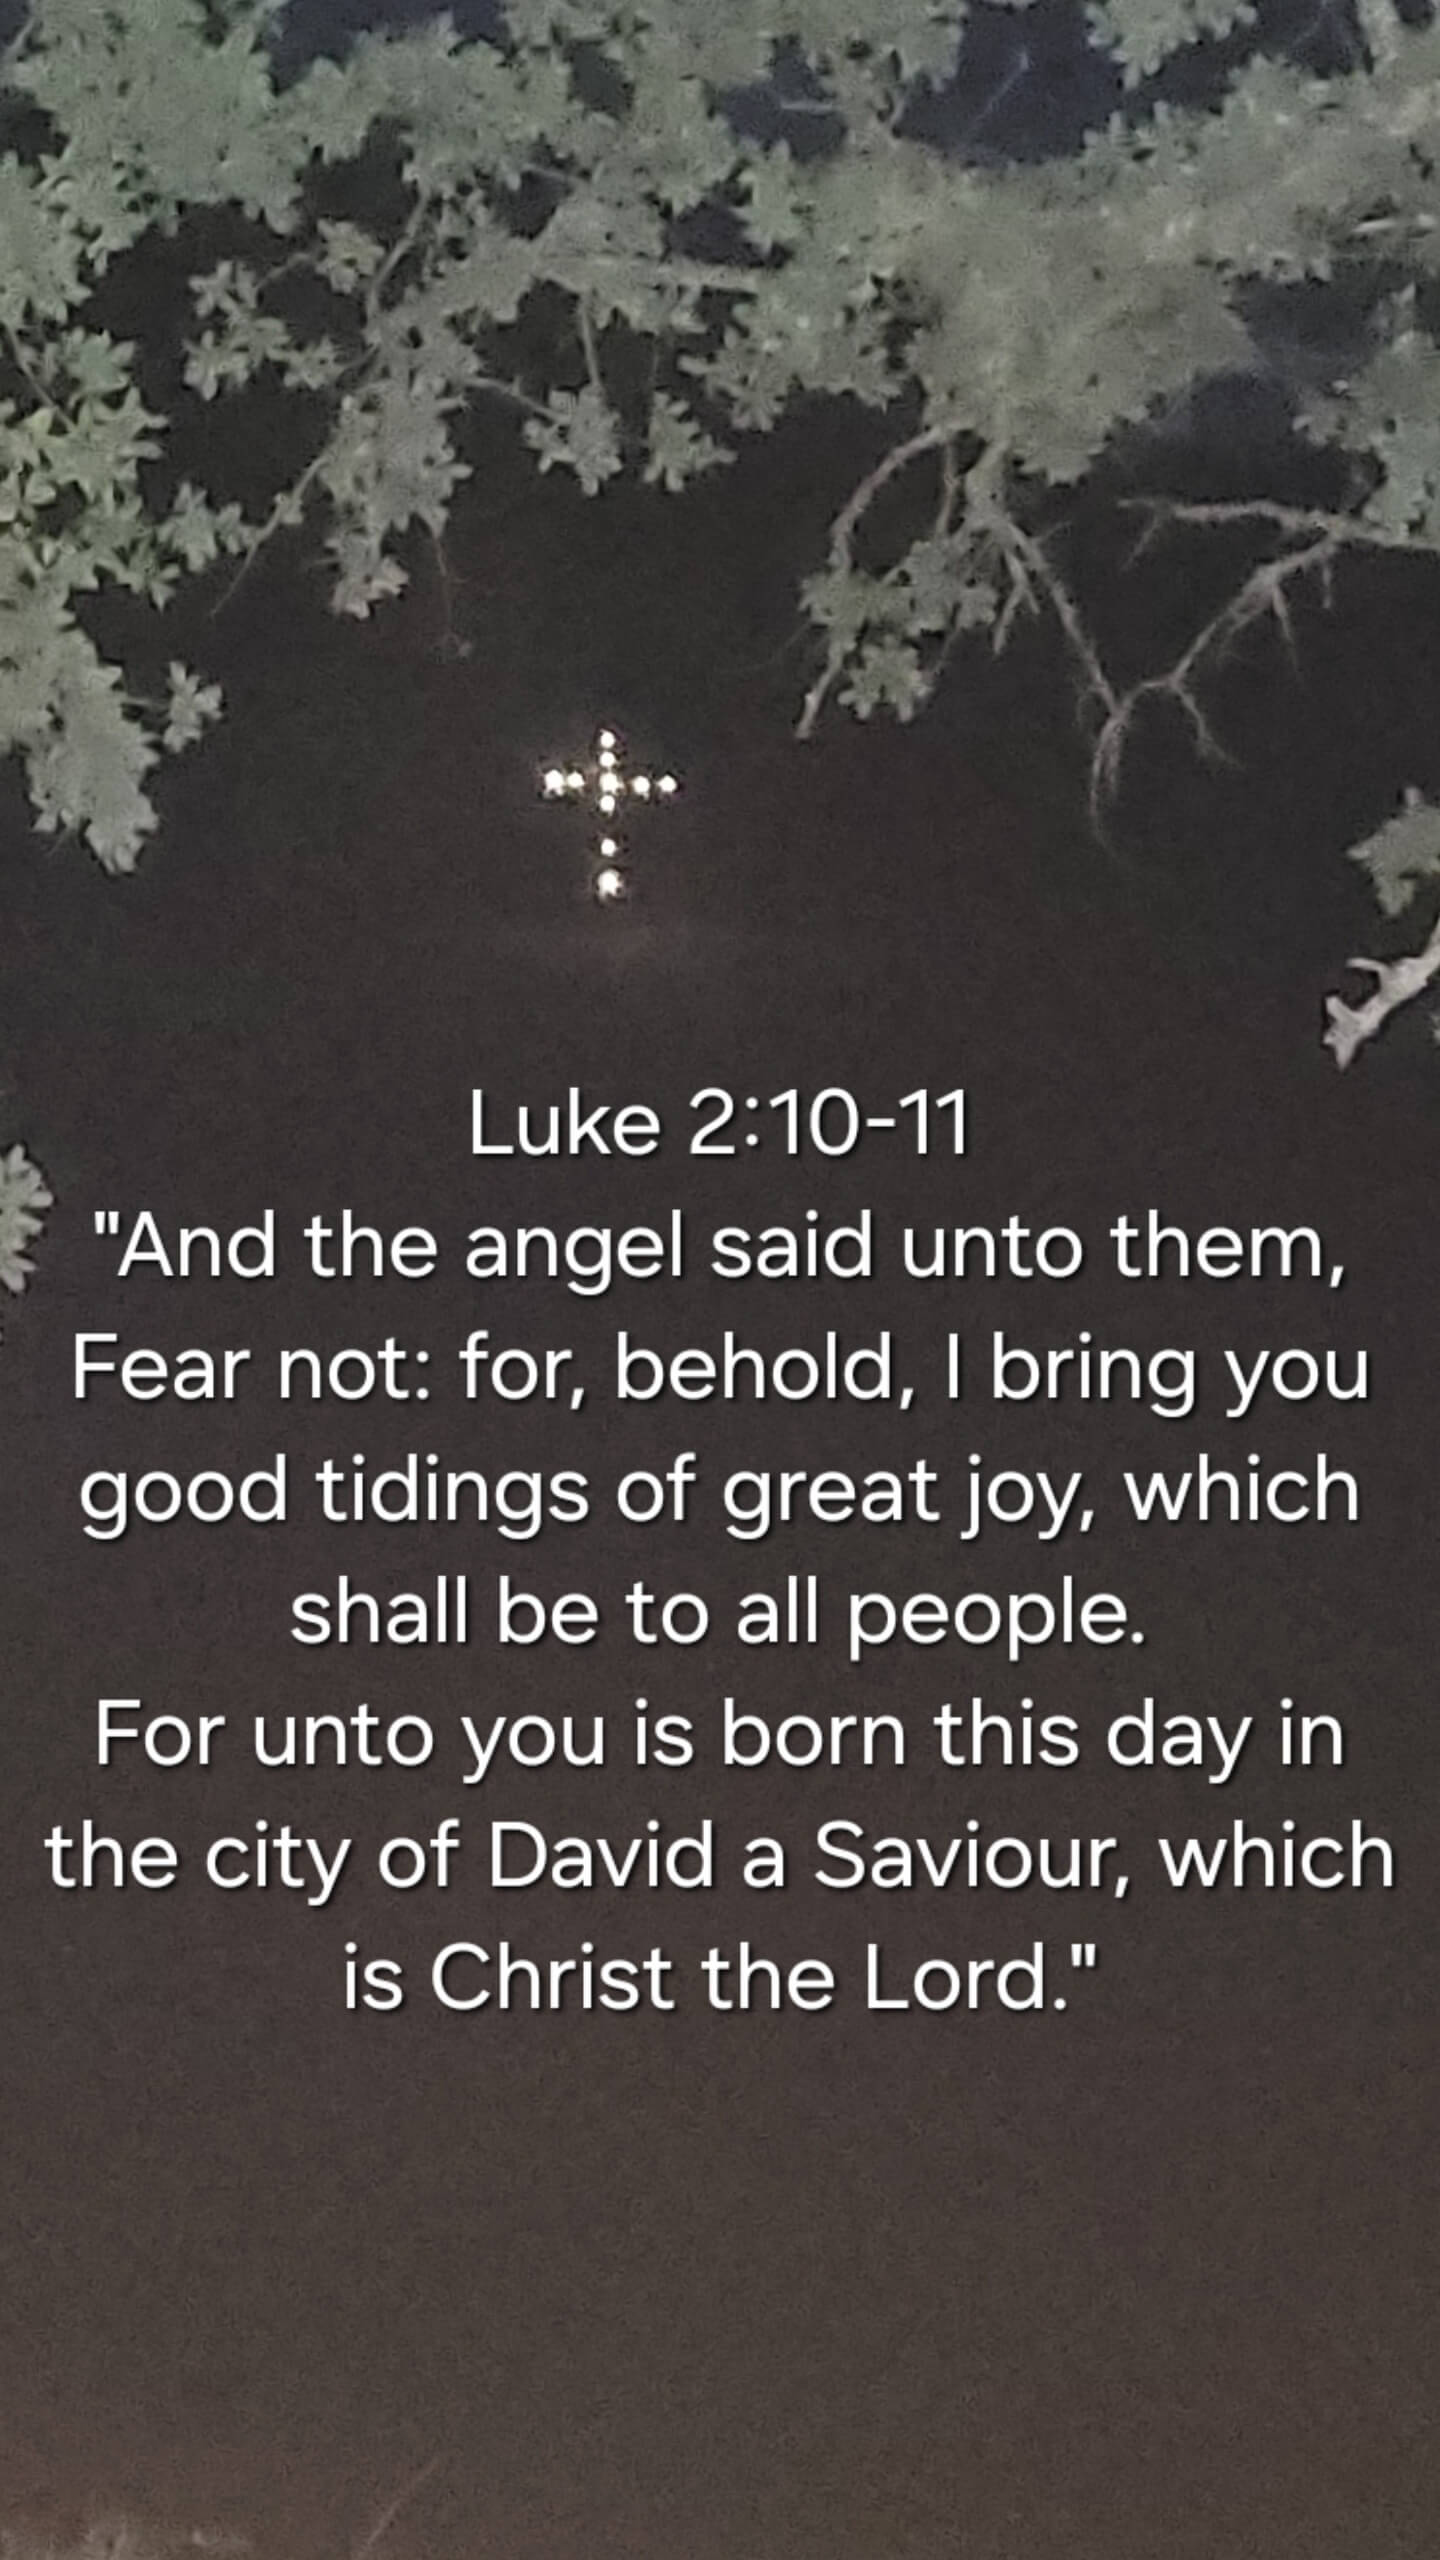 Luke 2:10-11